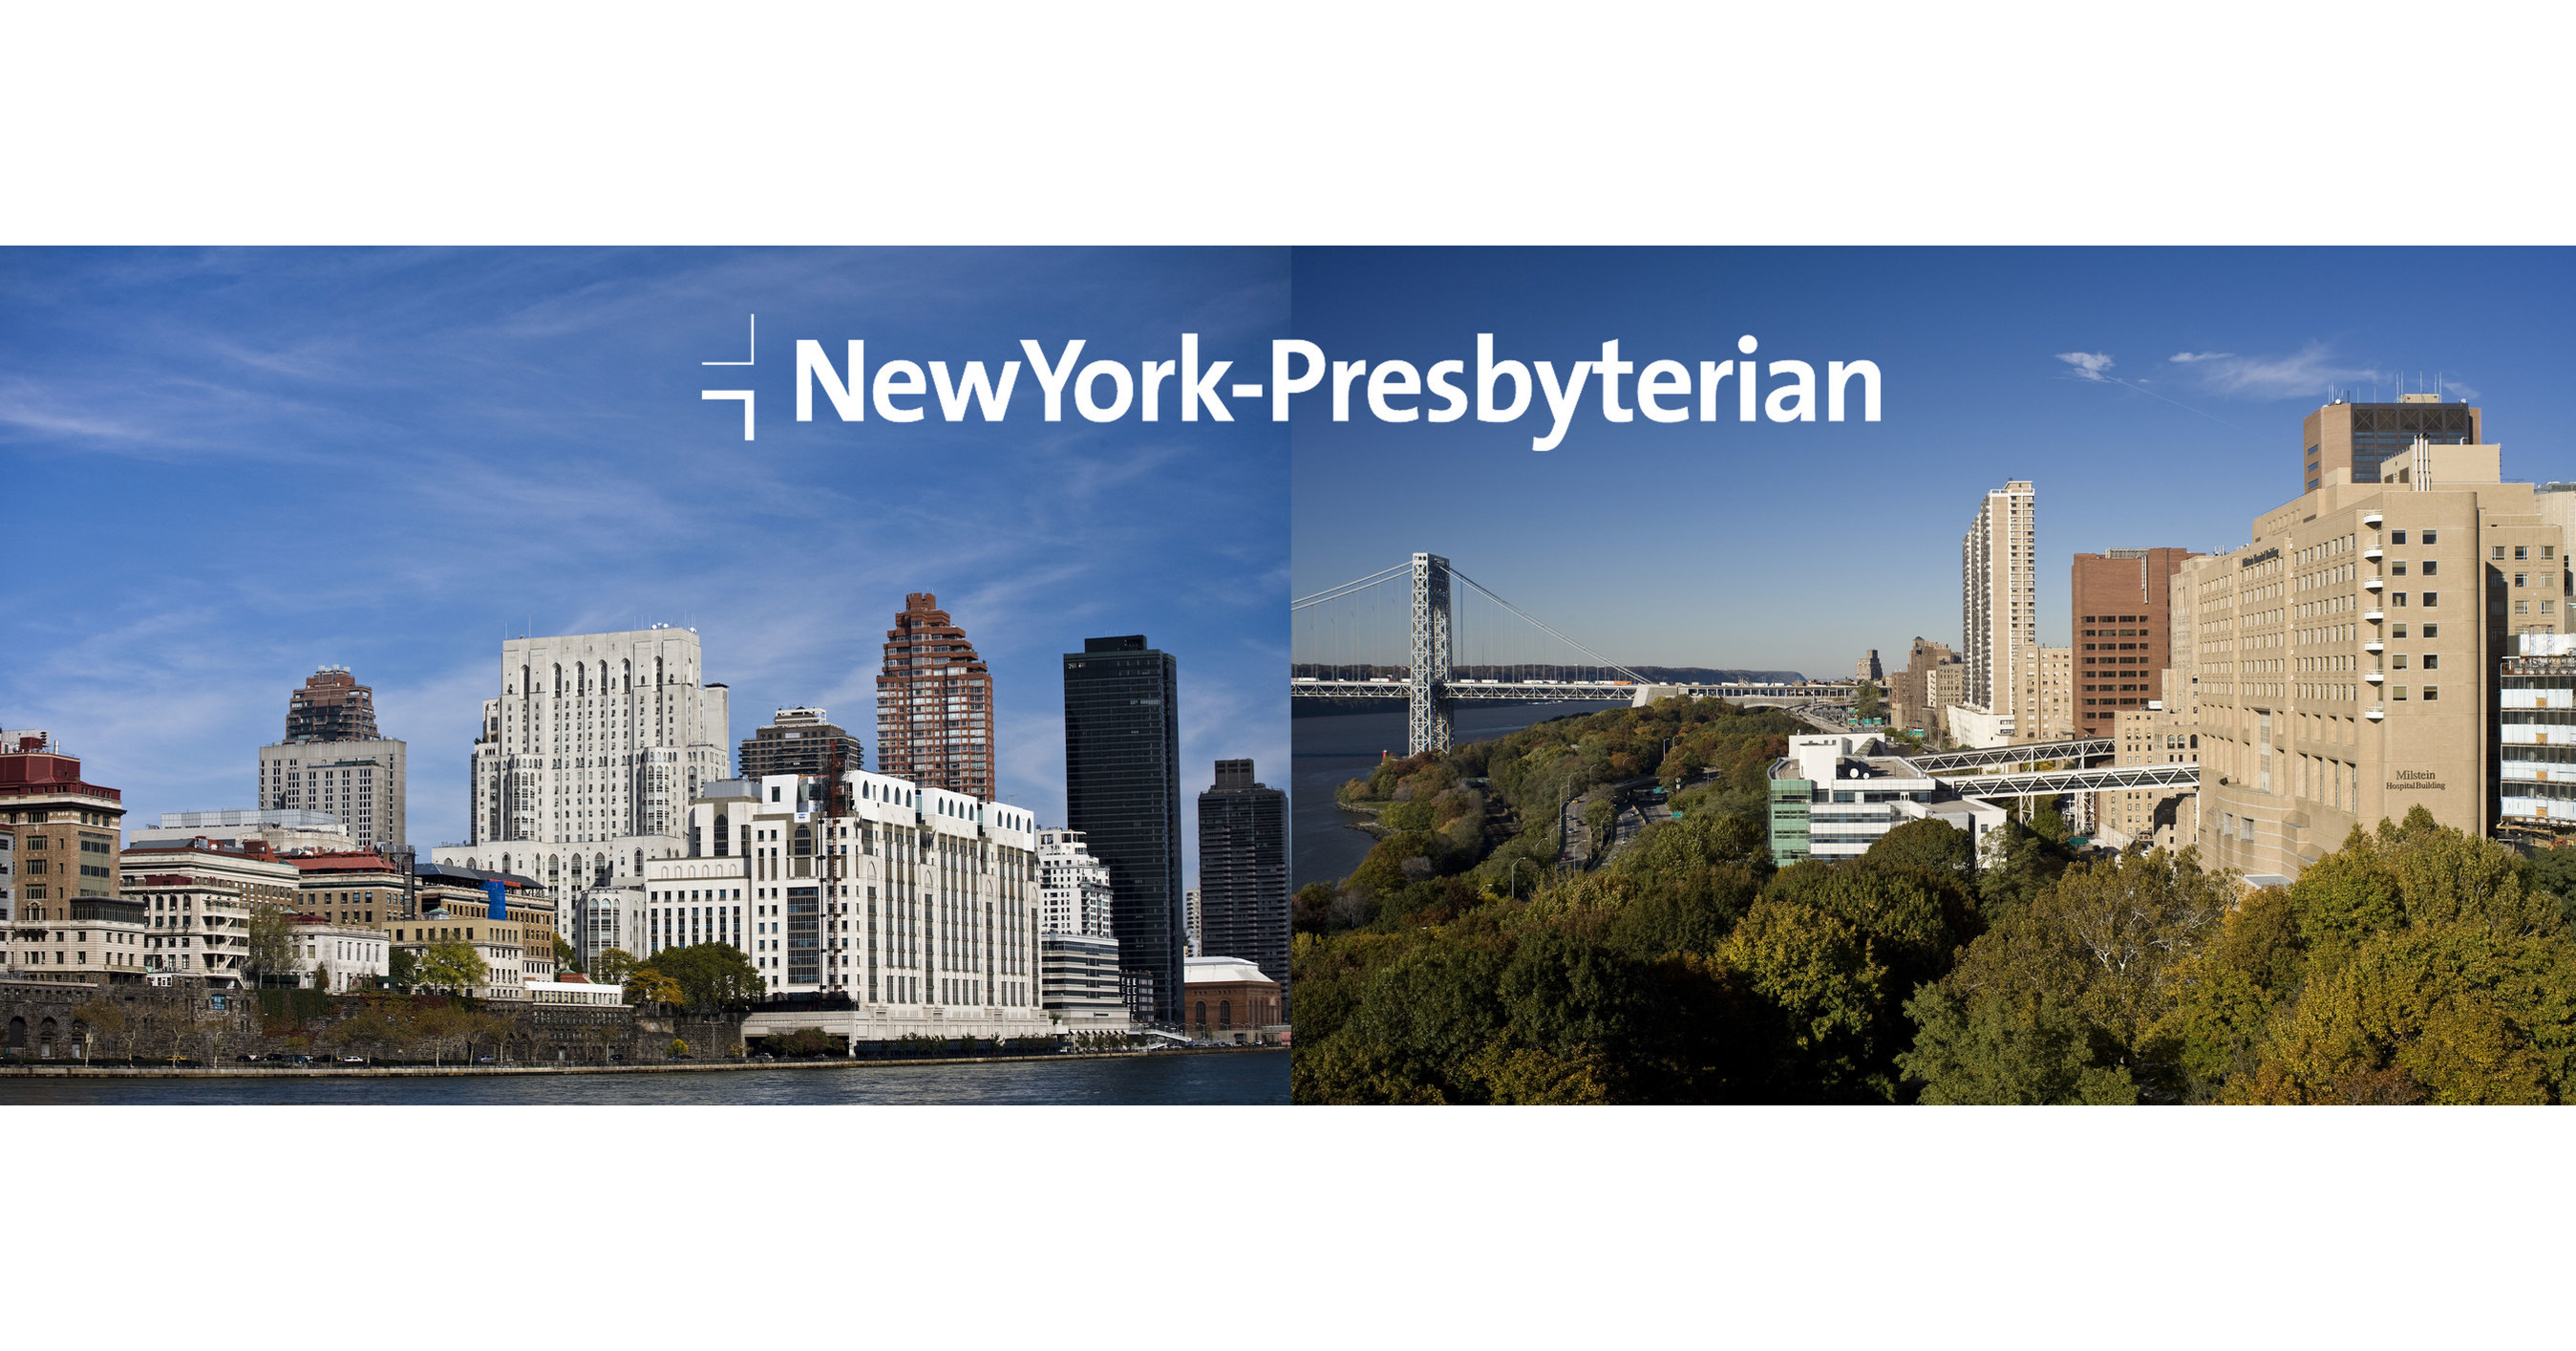 NewYork-Presbyterian Hospital